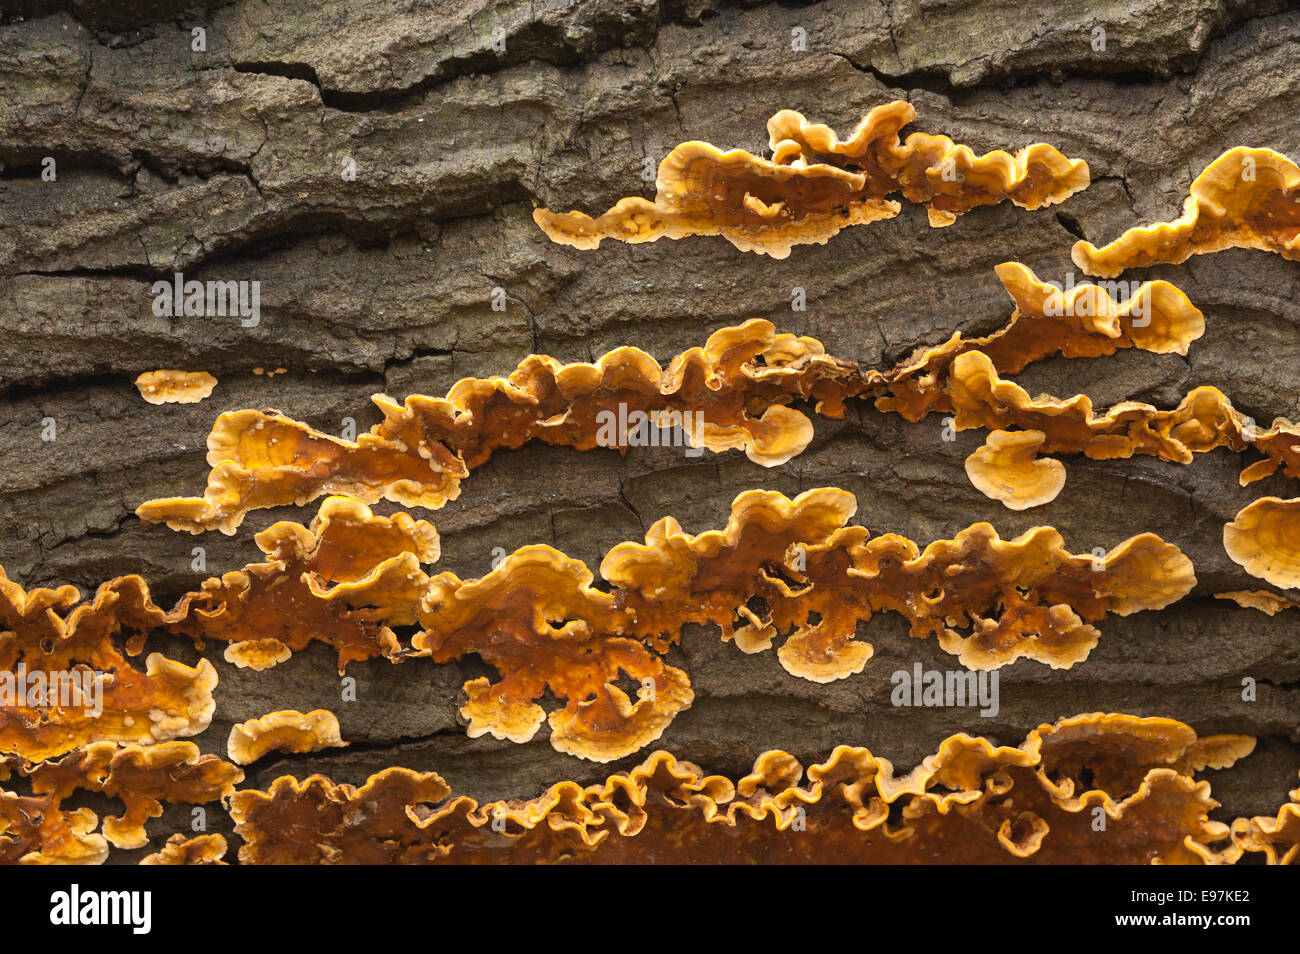 Presque vif orange éclatant Rideau brun croûte velu champignons forment couches sur du bois de chêne commun morts se propager sous l'écorce du tronc le long Banque D'Images